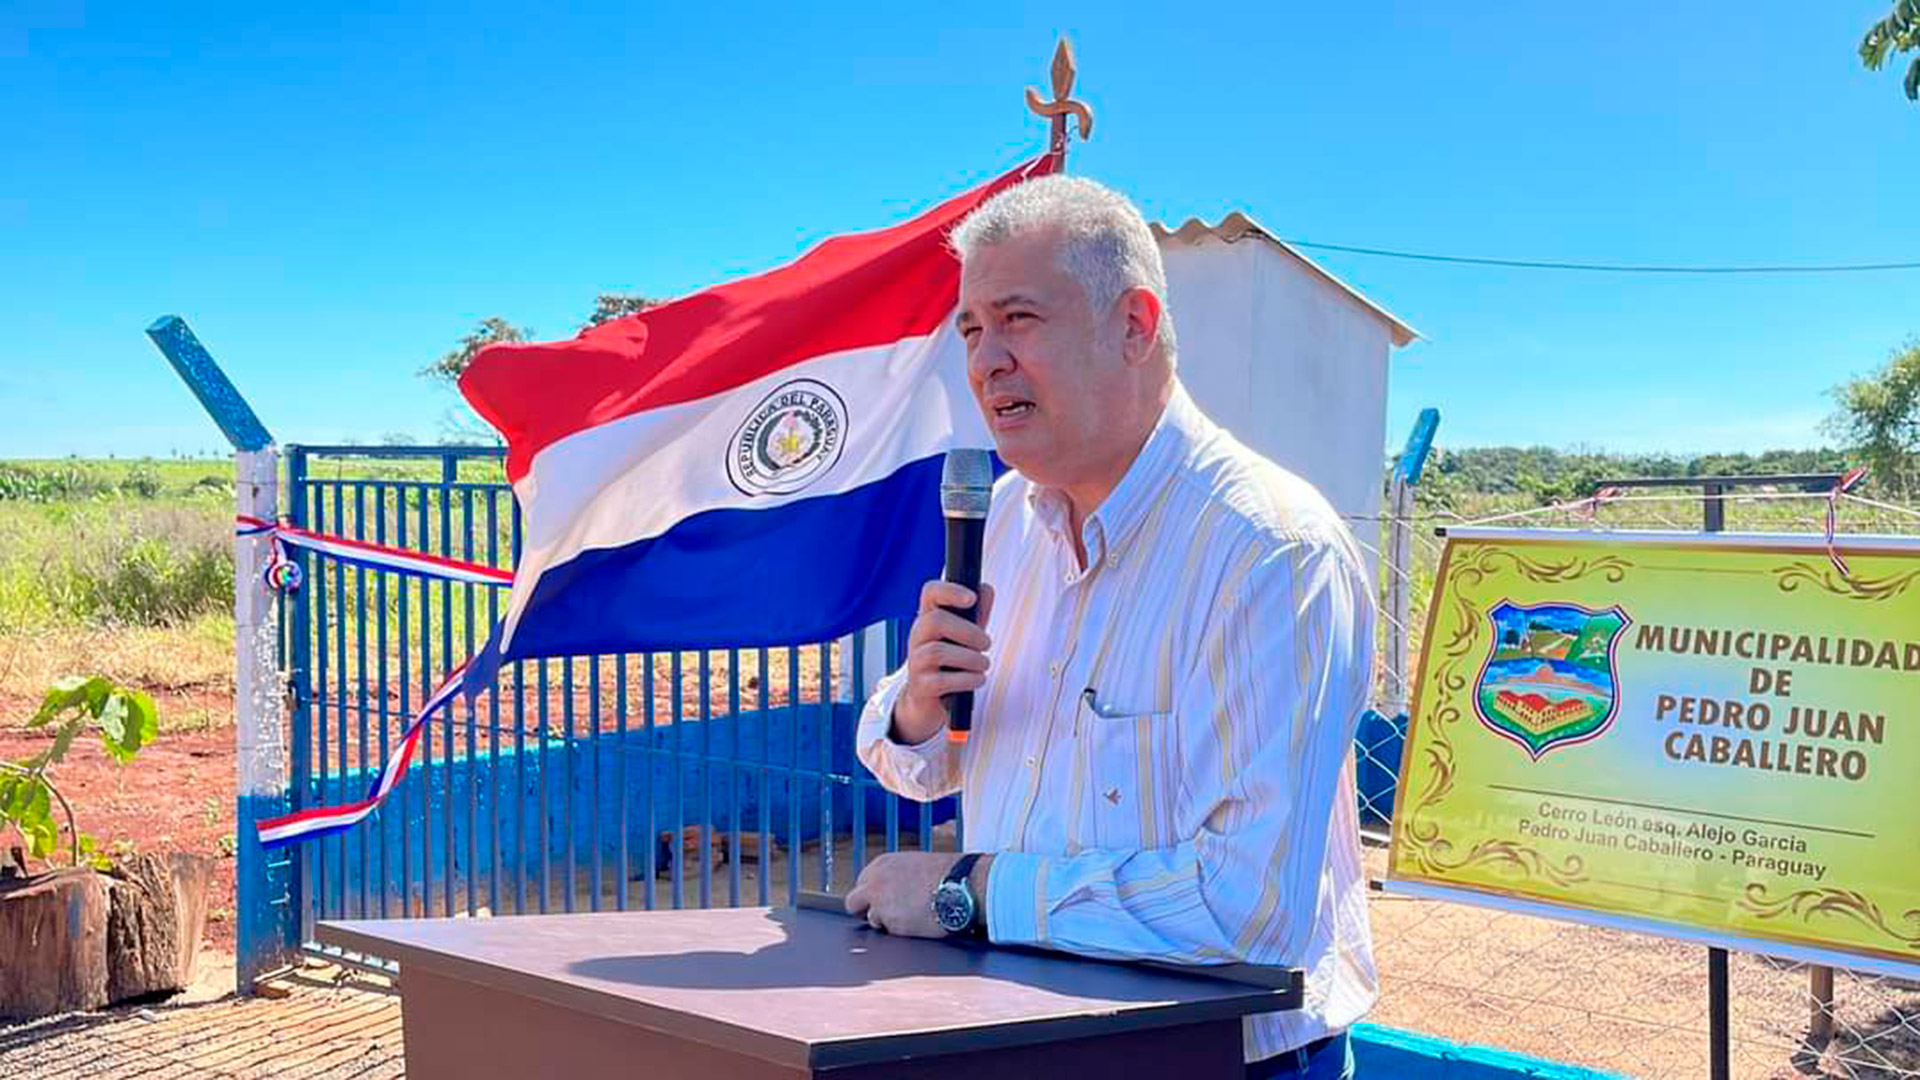 Murió el alcalde paraguayo que fue atacado a tiros el martes